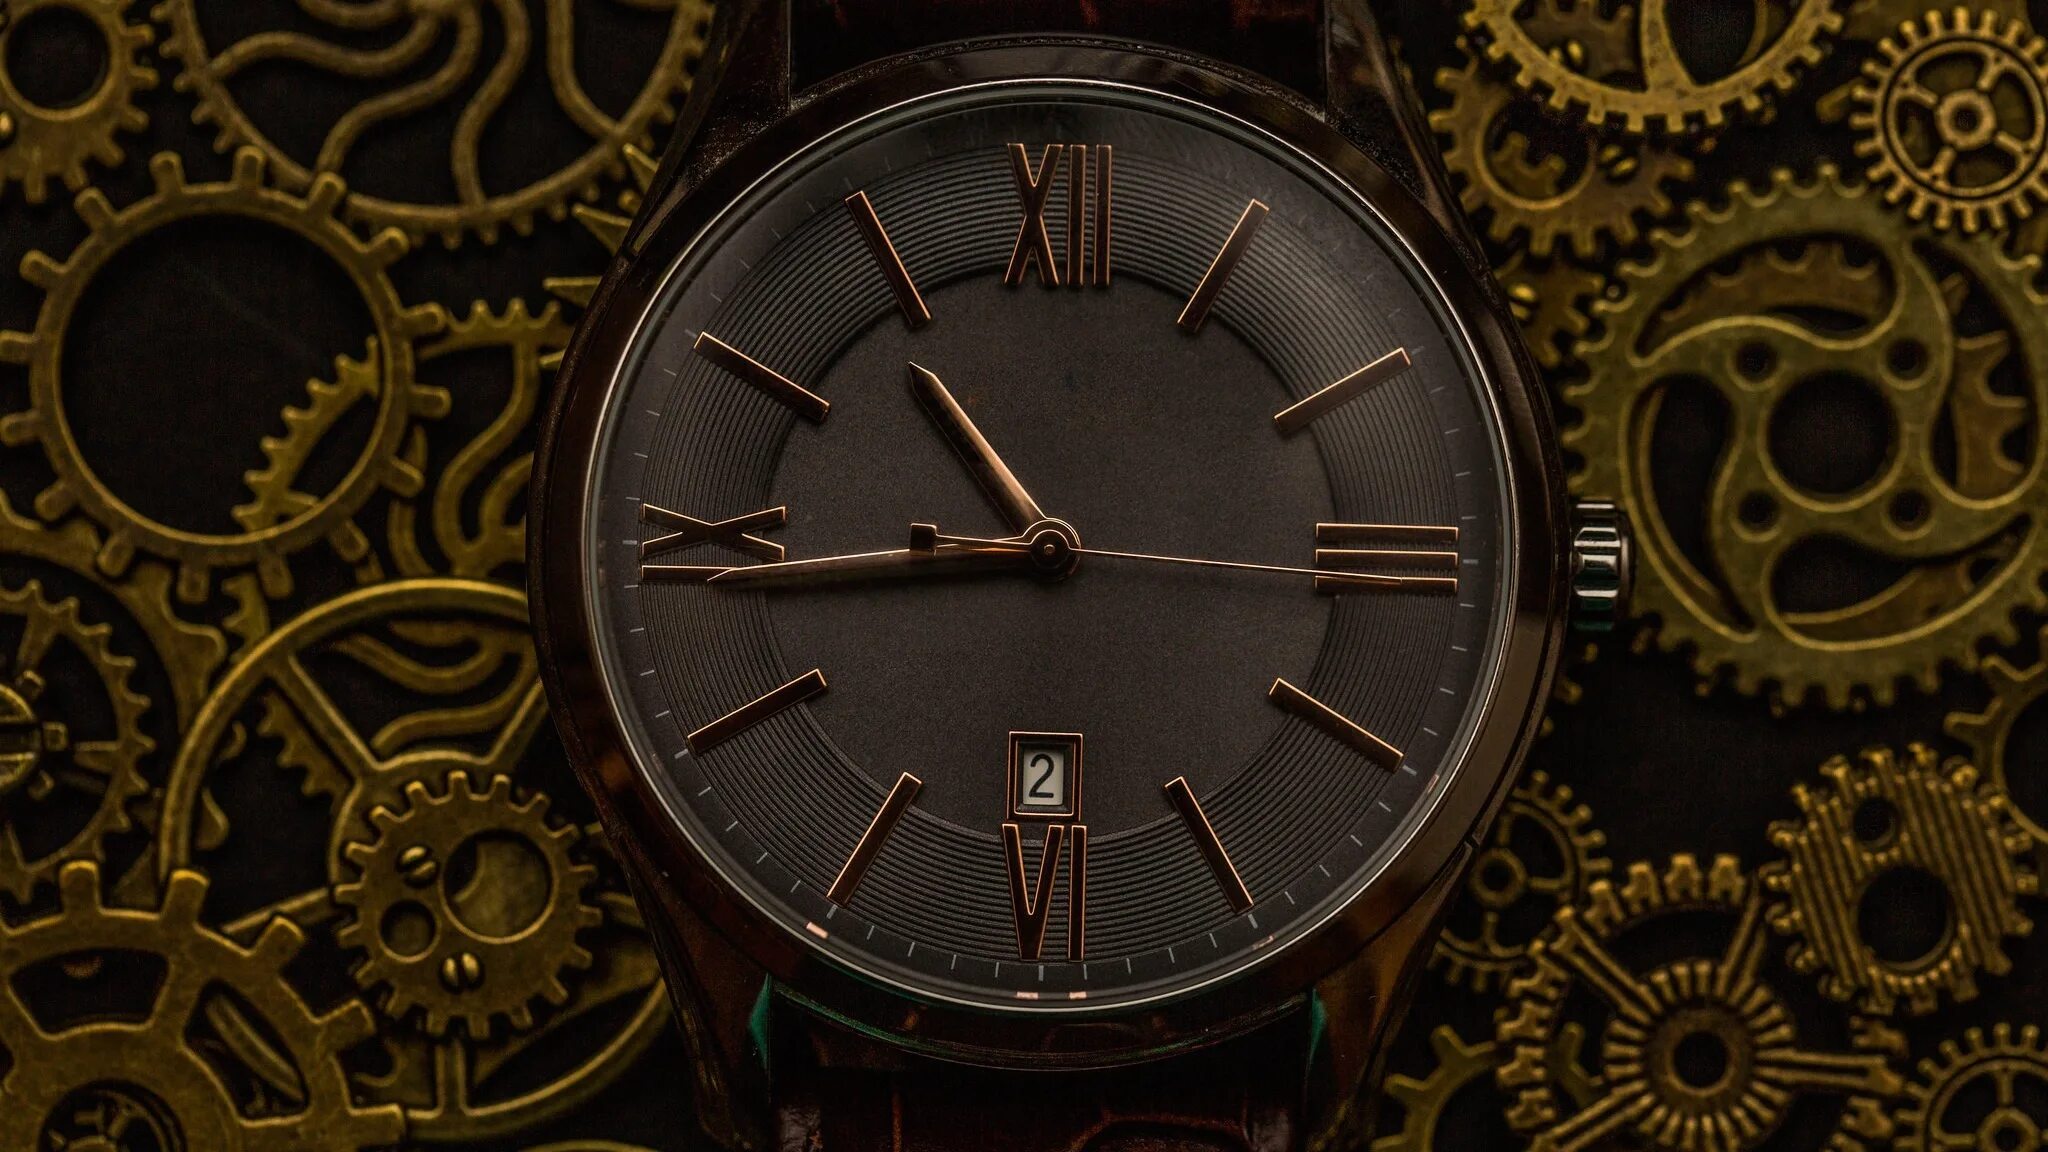 Фото обоев на часы. Часовой механизм. Механизм часов. Часы с механизмом. Механизм старинных часов.